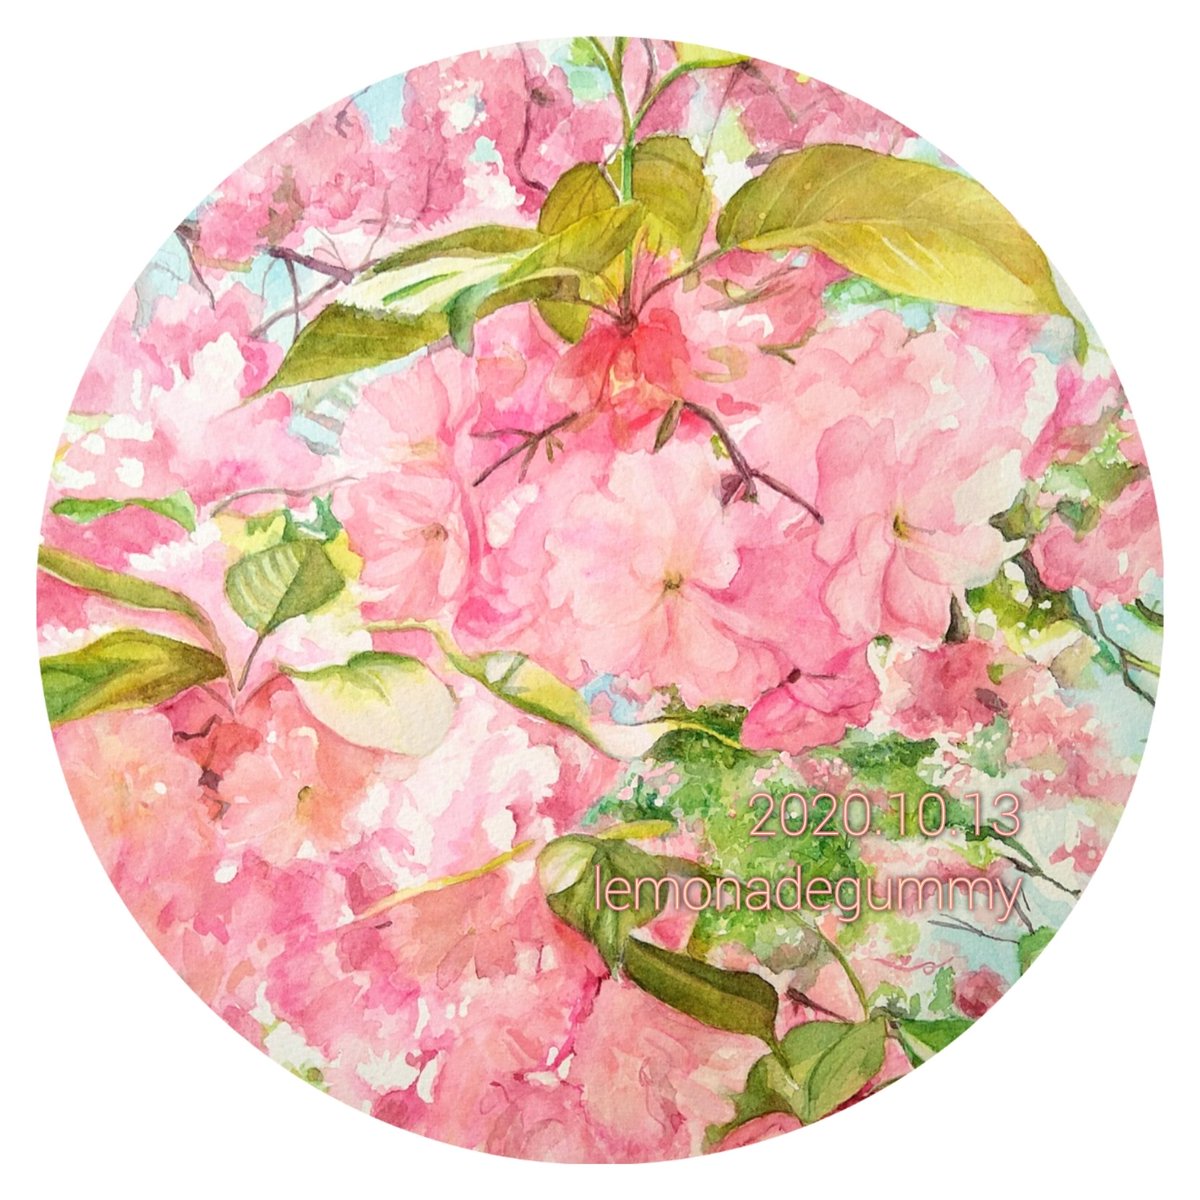 「#みなさん3年前の今頃はどんな絵描いてましたか 3年前はこちらの桜を描いていまし」|れもんぐみ@4/7~企画展シビュラたちが志向するソサエティ(東京)のイラスト